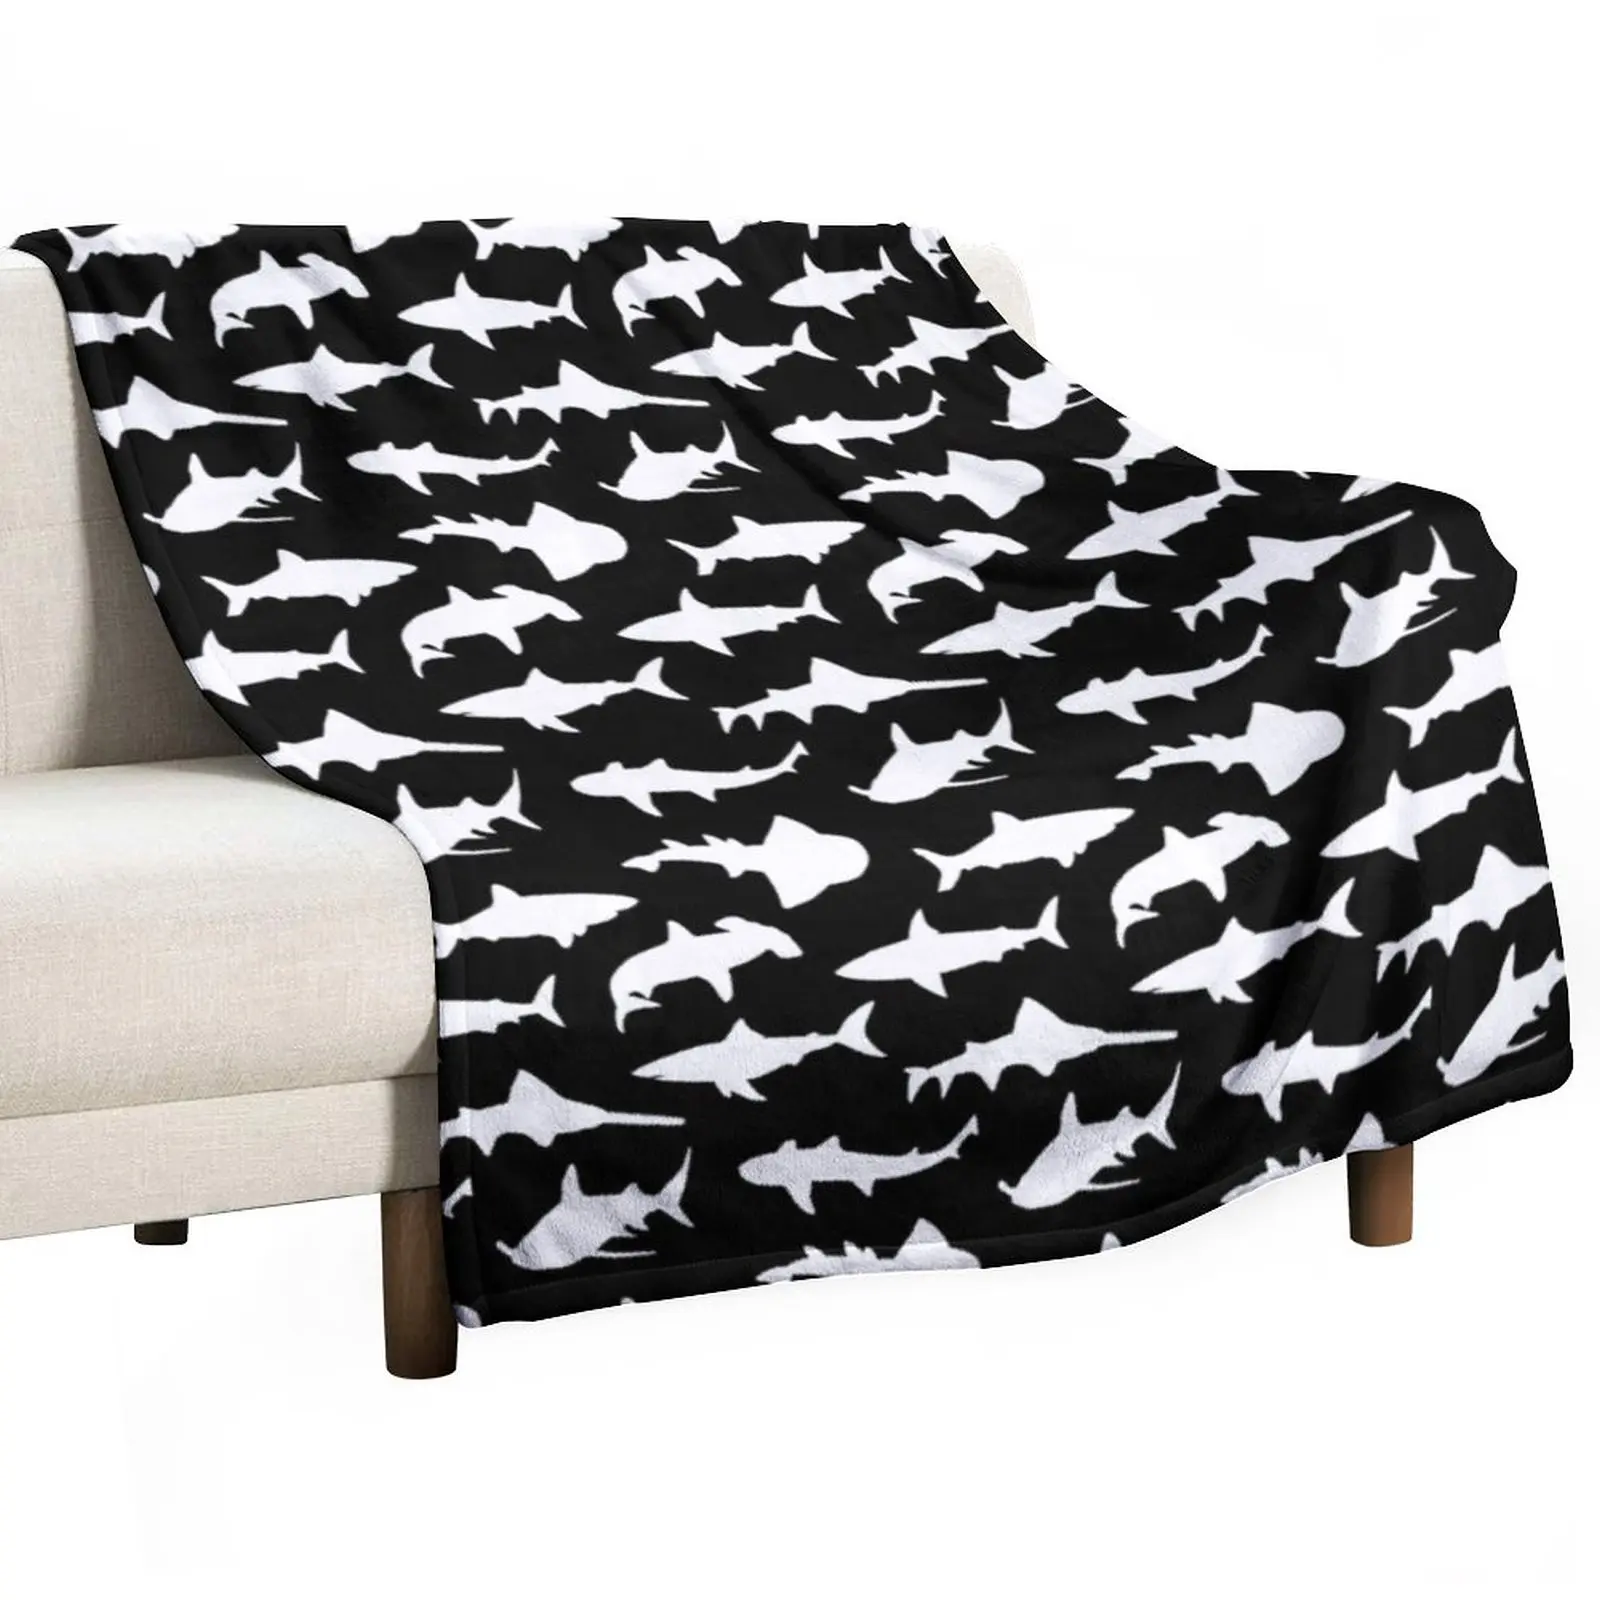 Одеяло с акулами на черном покрывале, милое одеяло, плед, плед для кровати